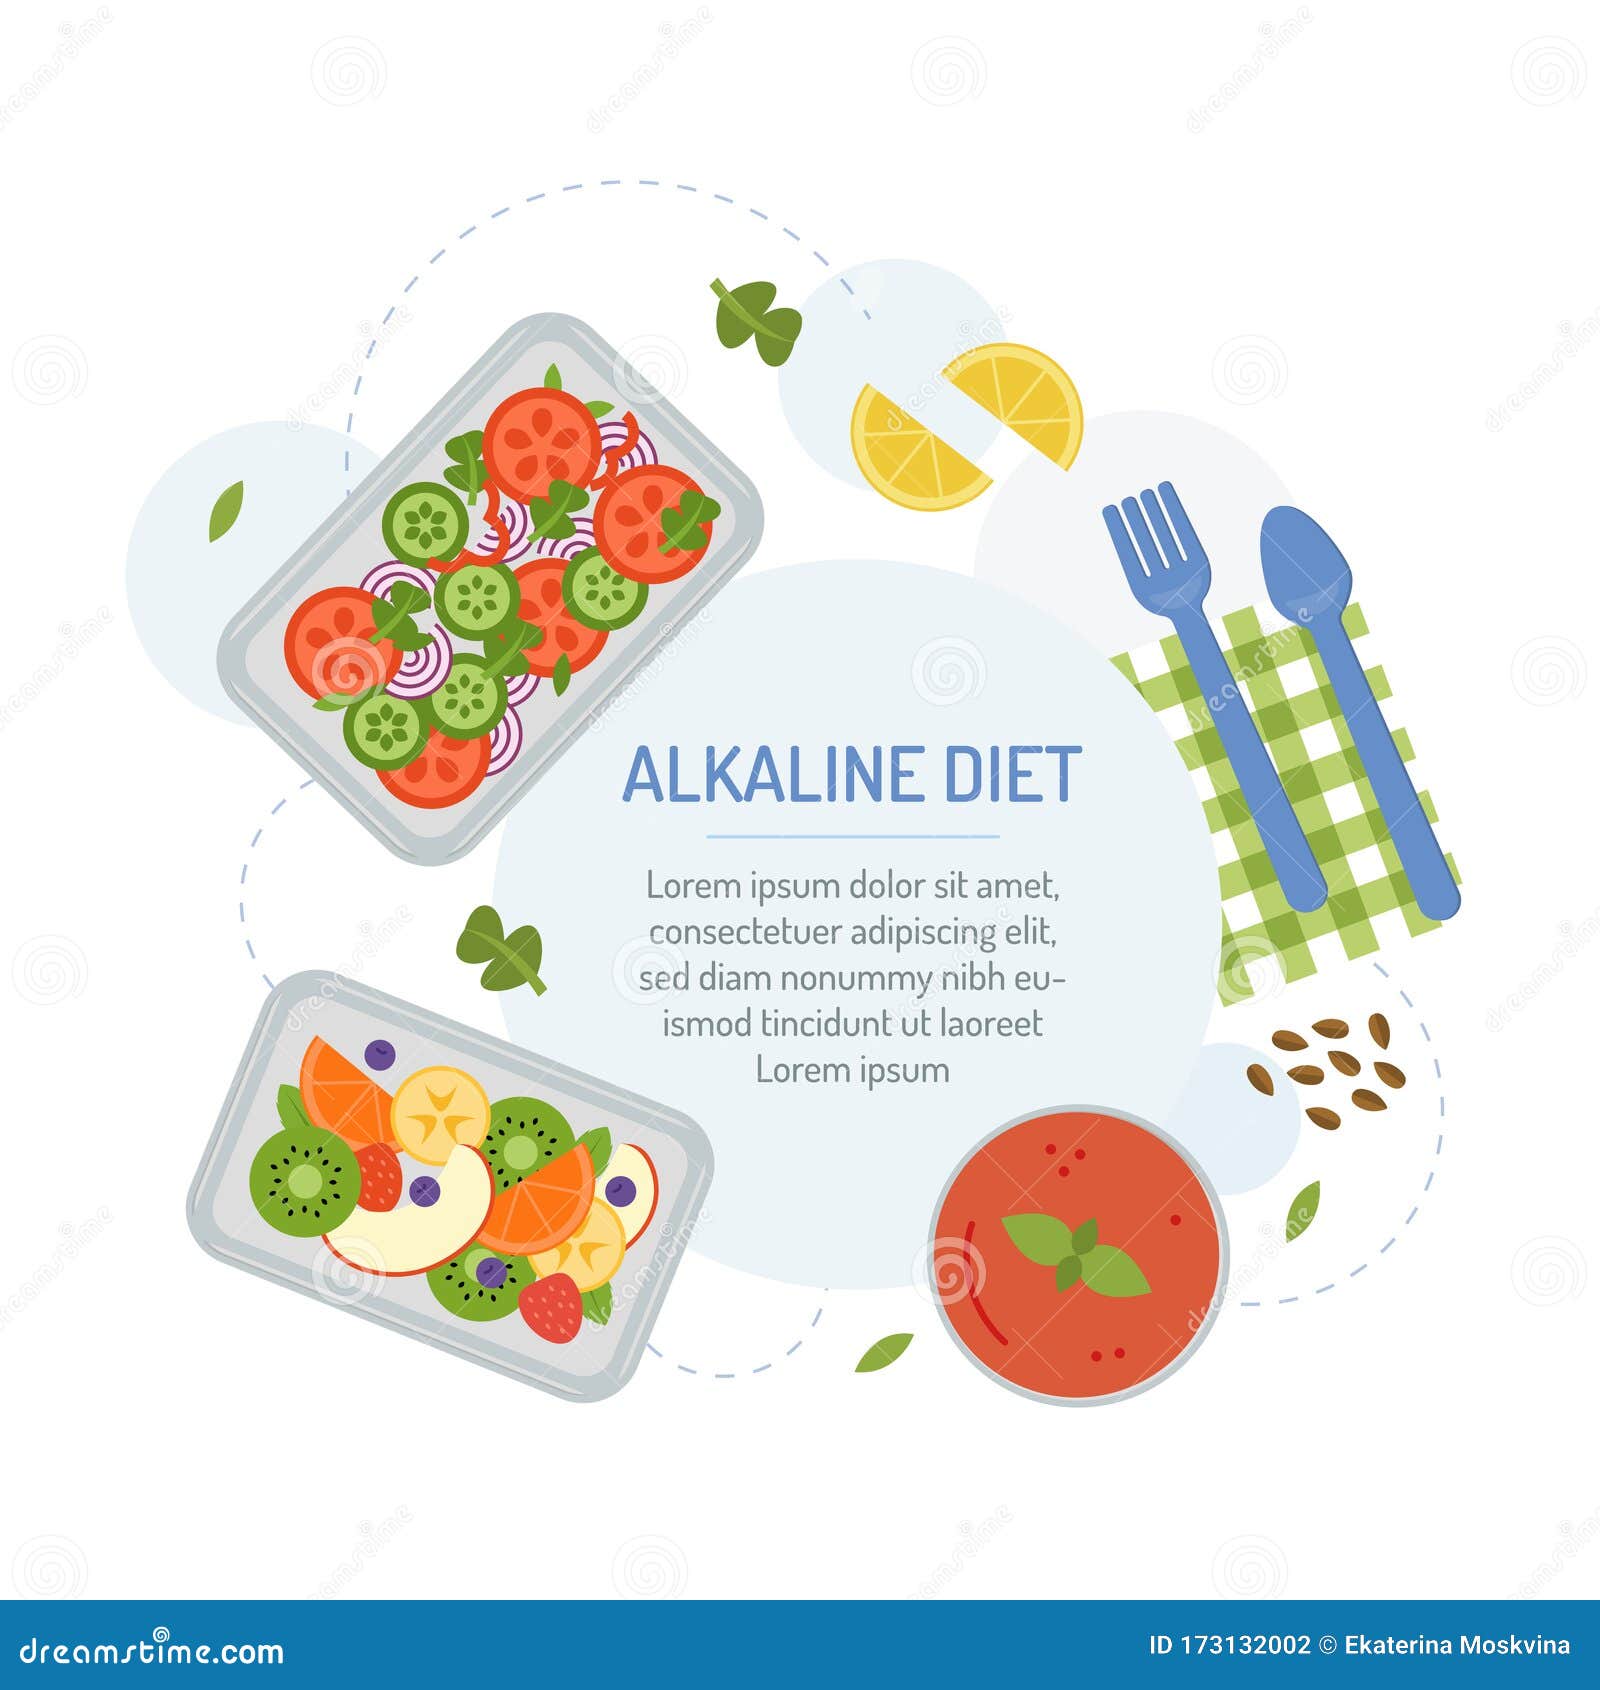 diete alcaline menu)